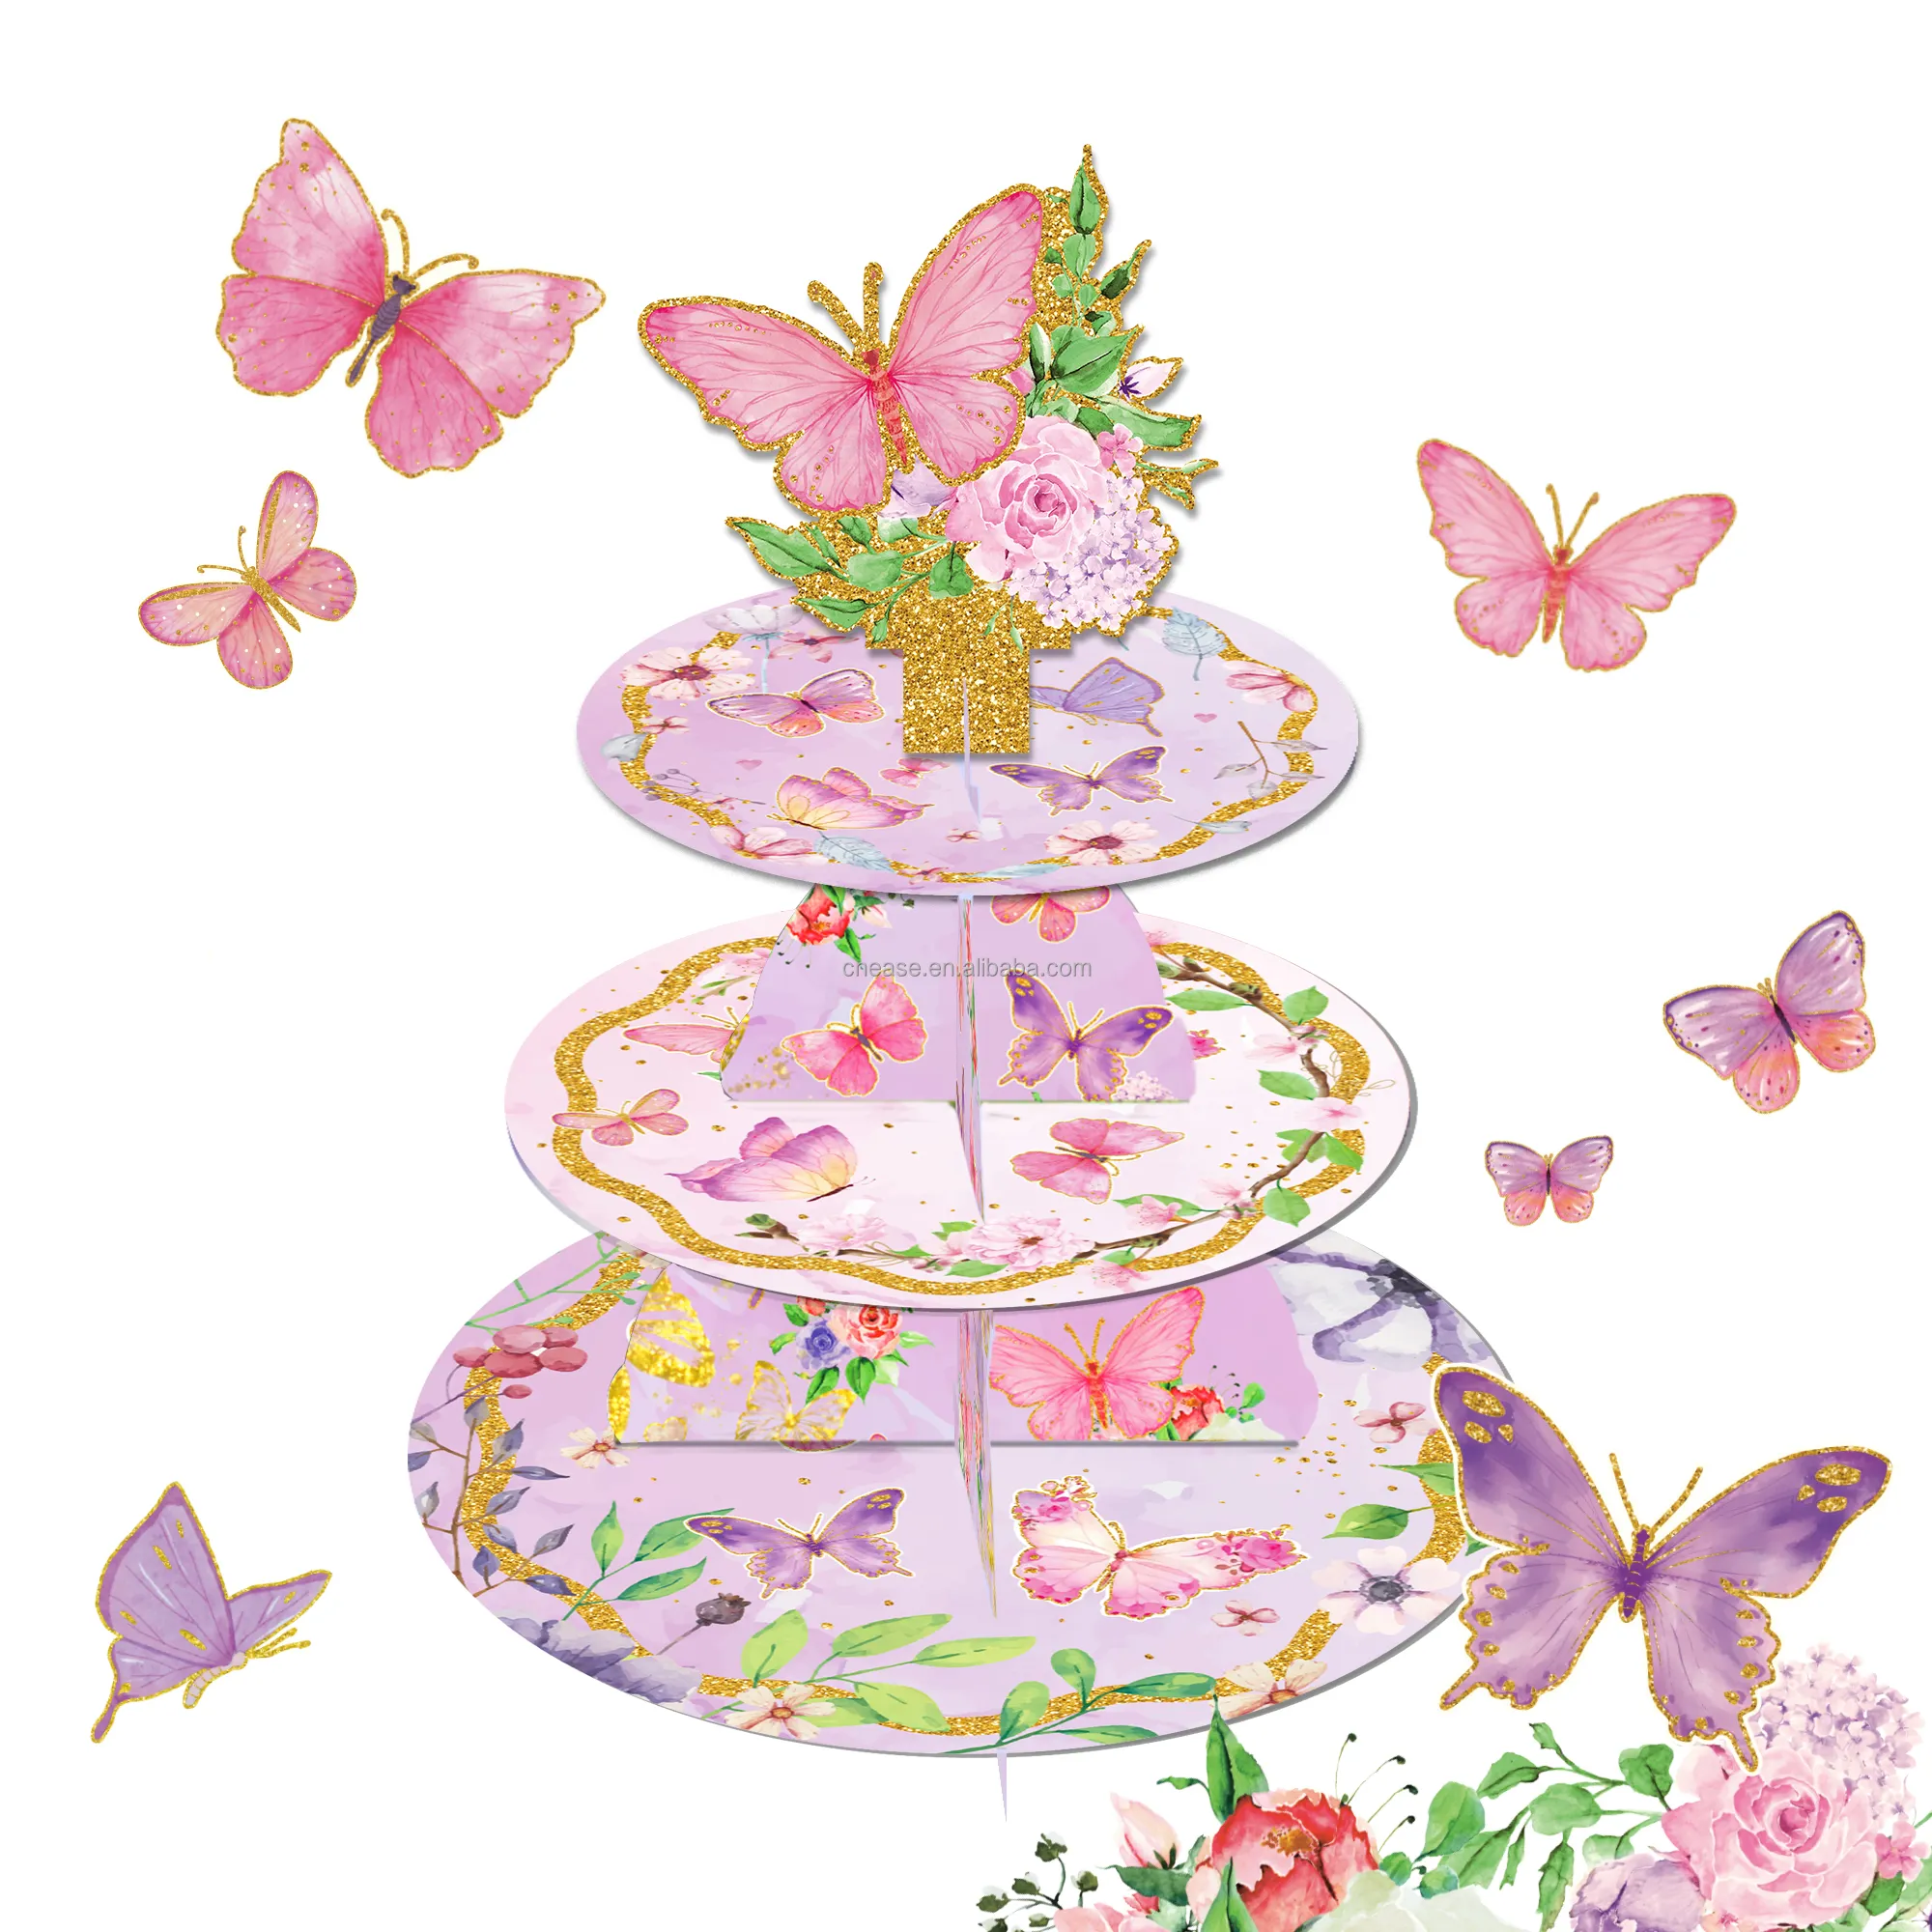 DT075 Butterfly Party Theme Kuchenst änder 3 Tier Cupcake Stand Party Dekorationen für Geburtstags feier zubehör